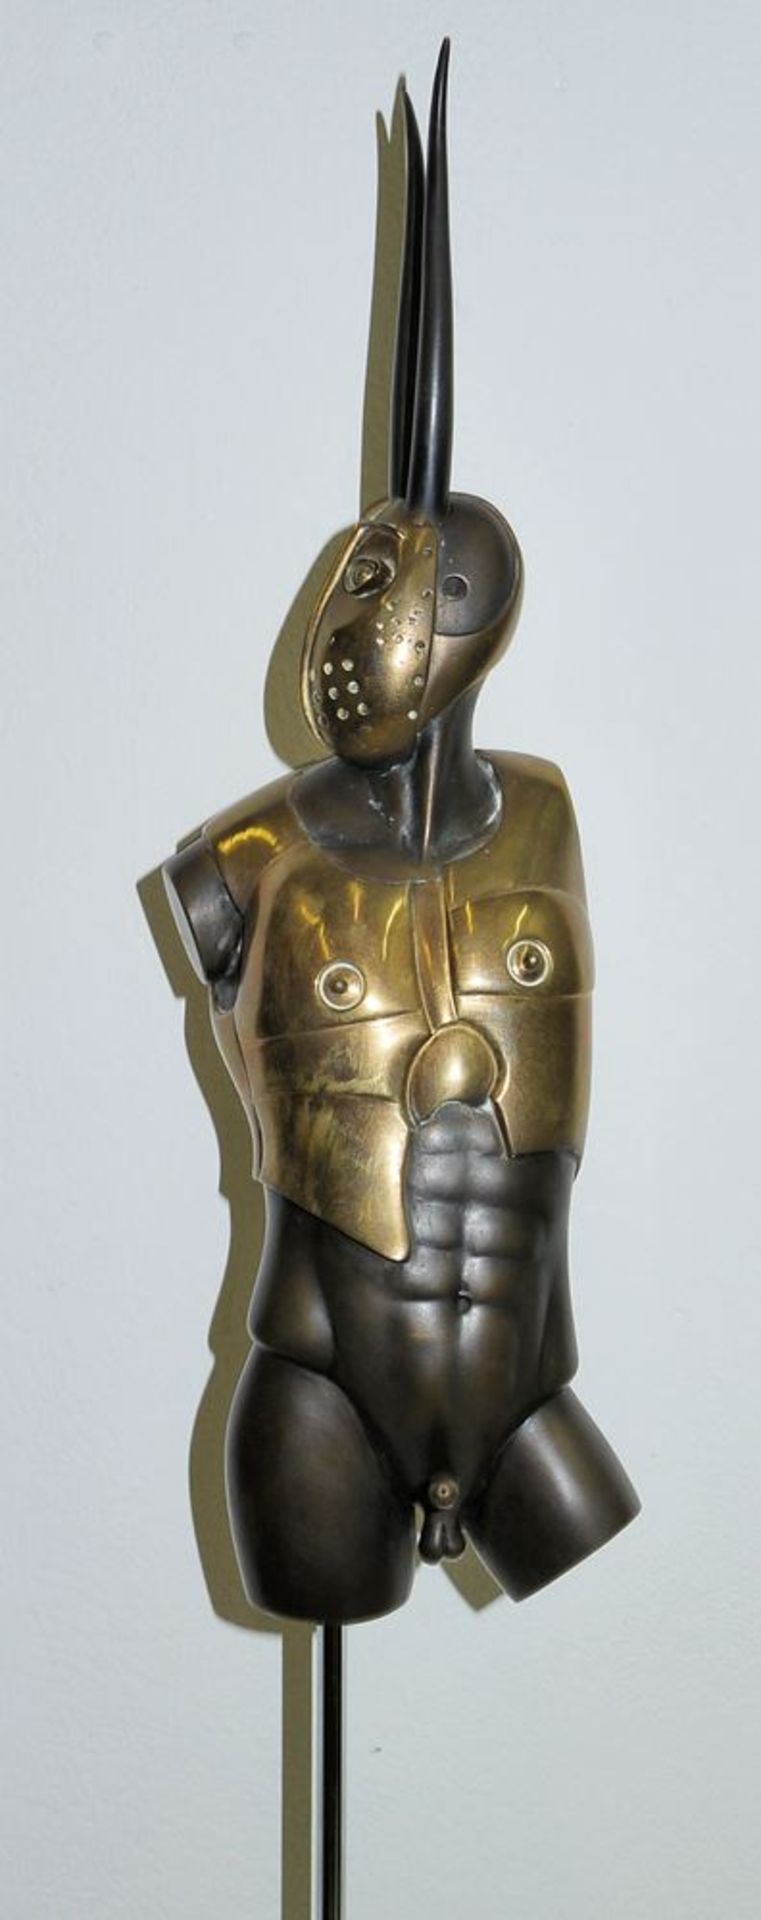 Paul Wunderlich, "Minotauros", Bronzeplastik von 1977 - Bild 3 aus 3